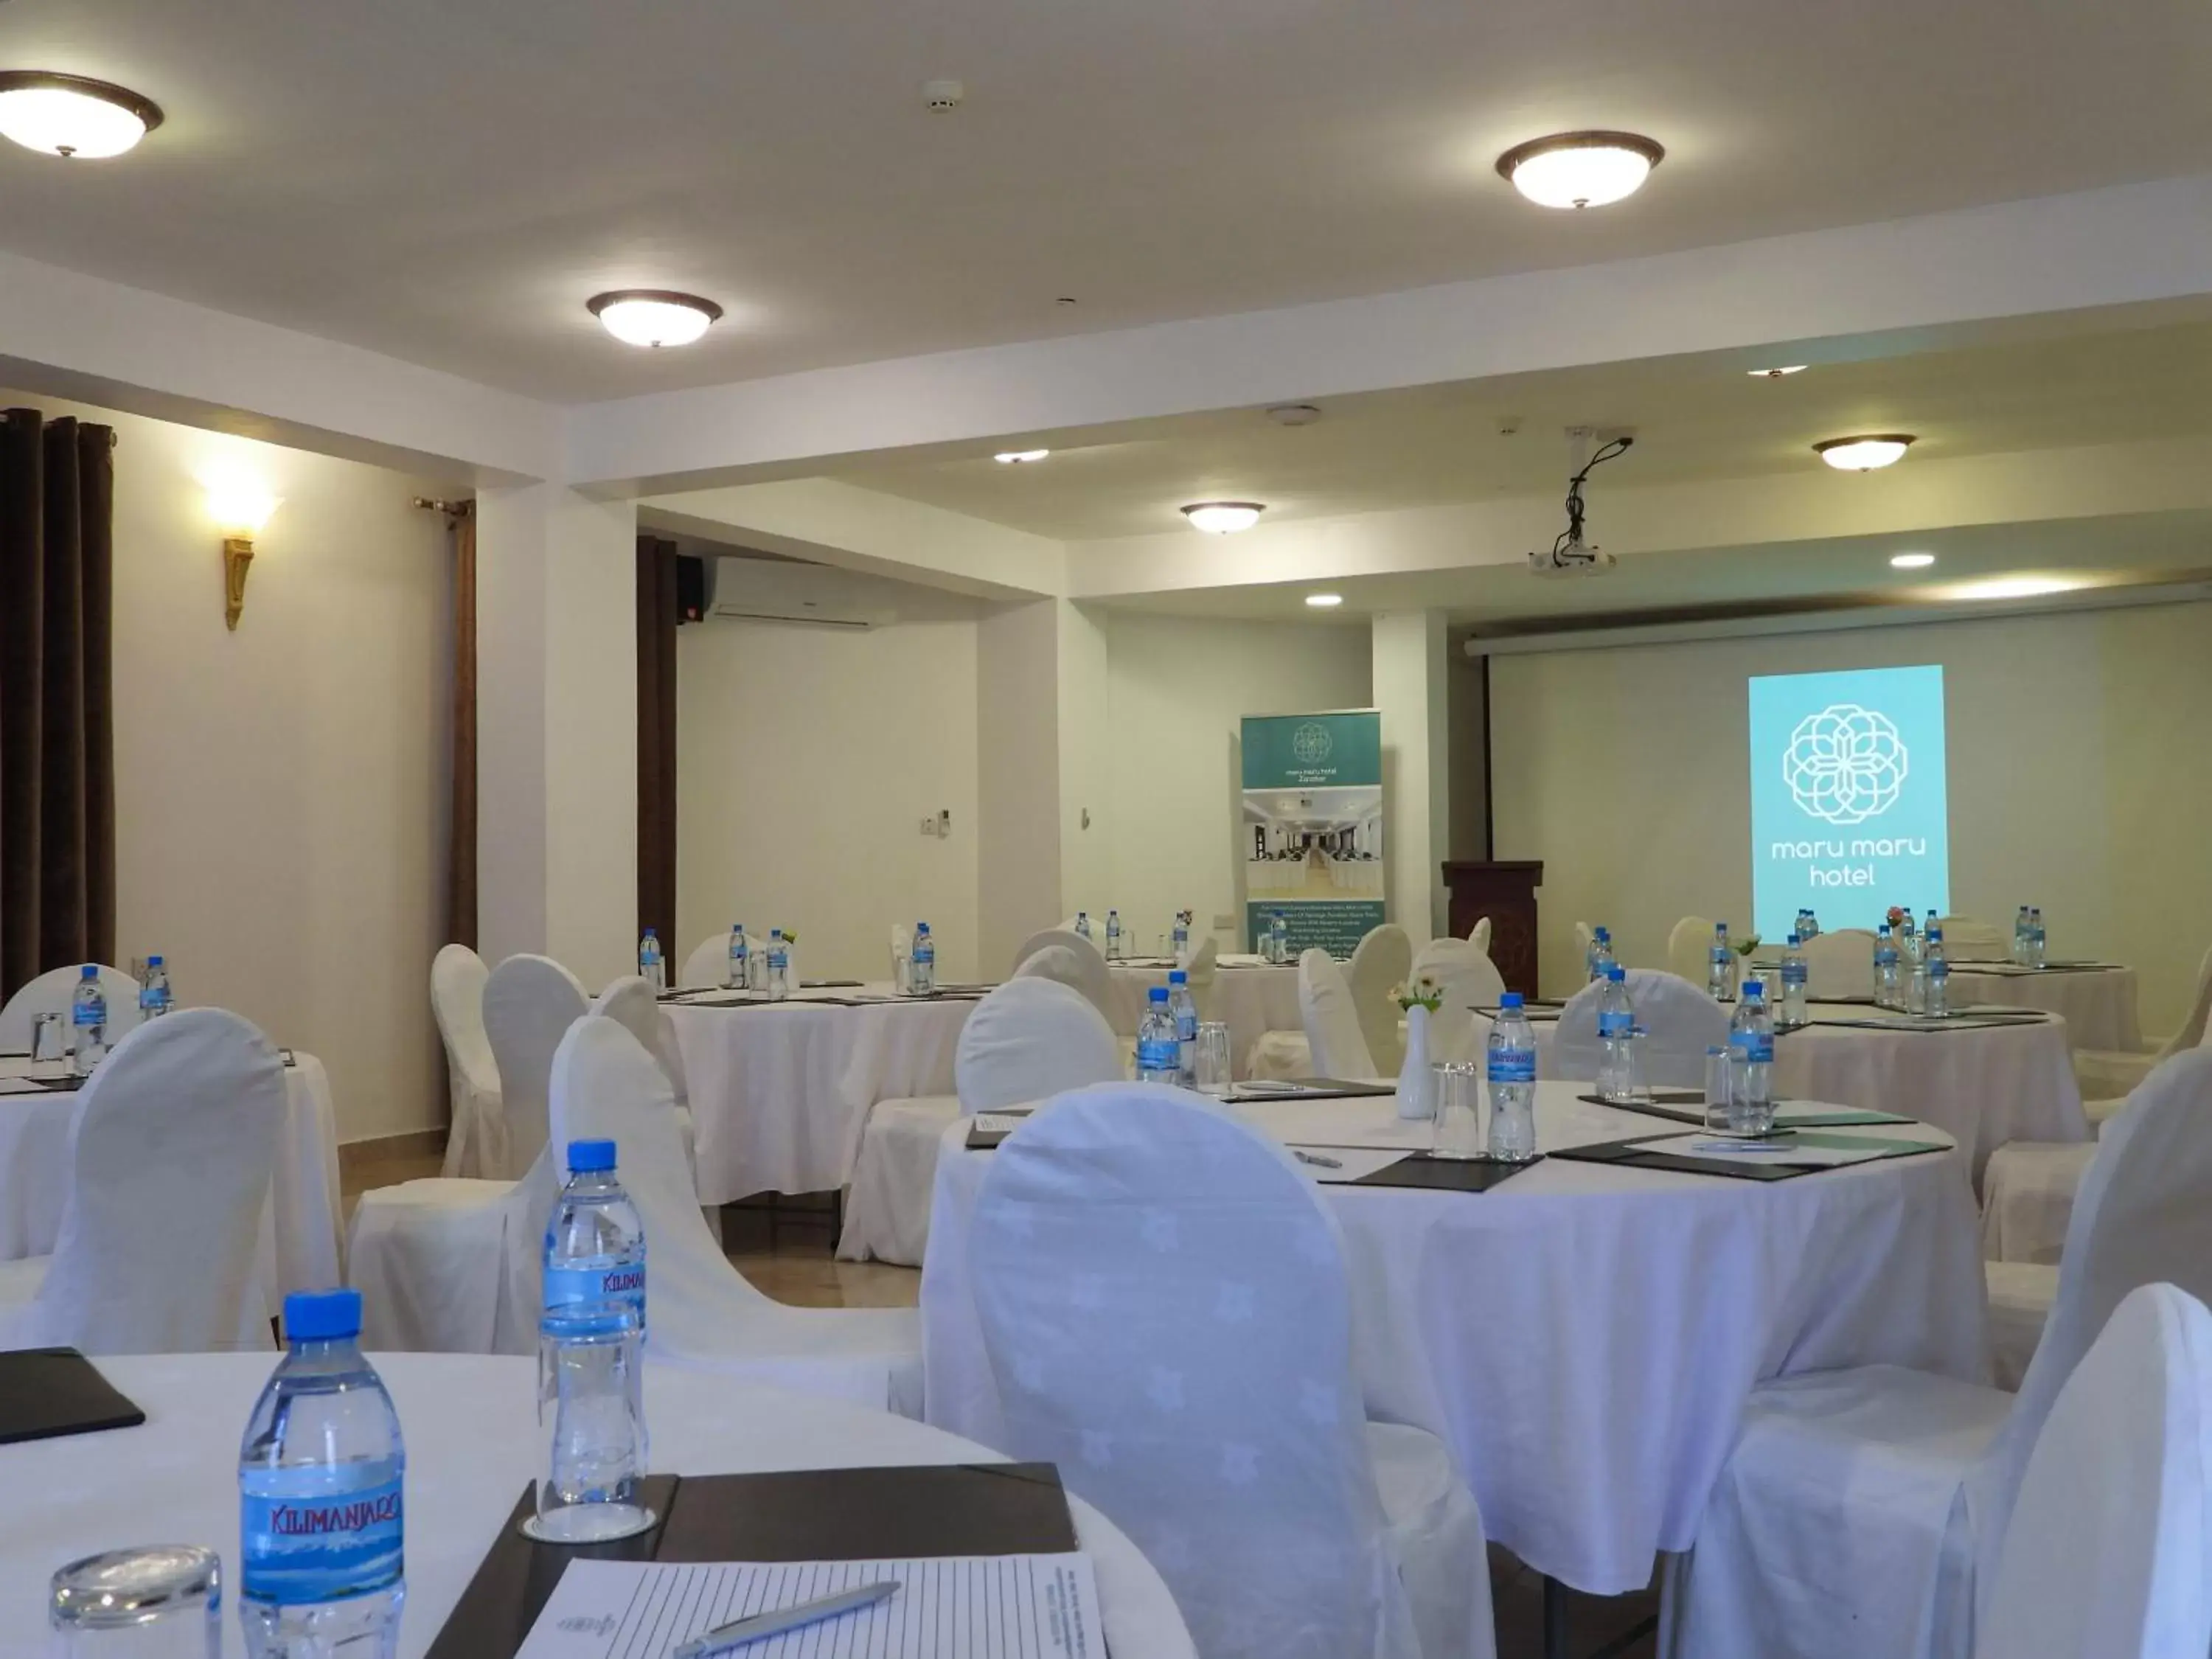 Meeting/conference room, Banquet Facilities in Maru Maru Hotel